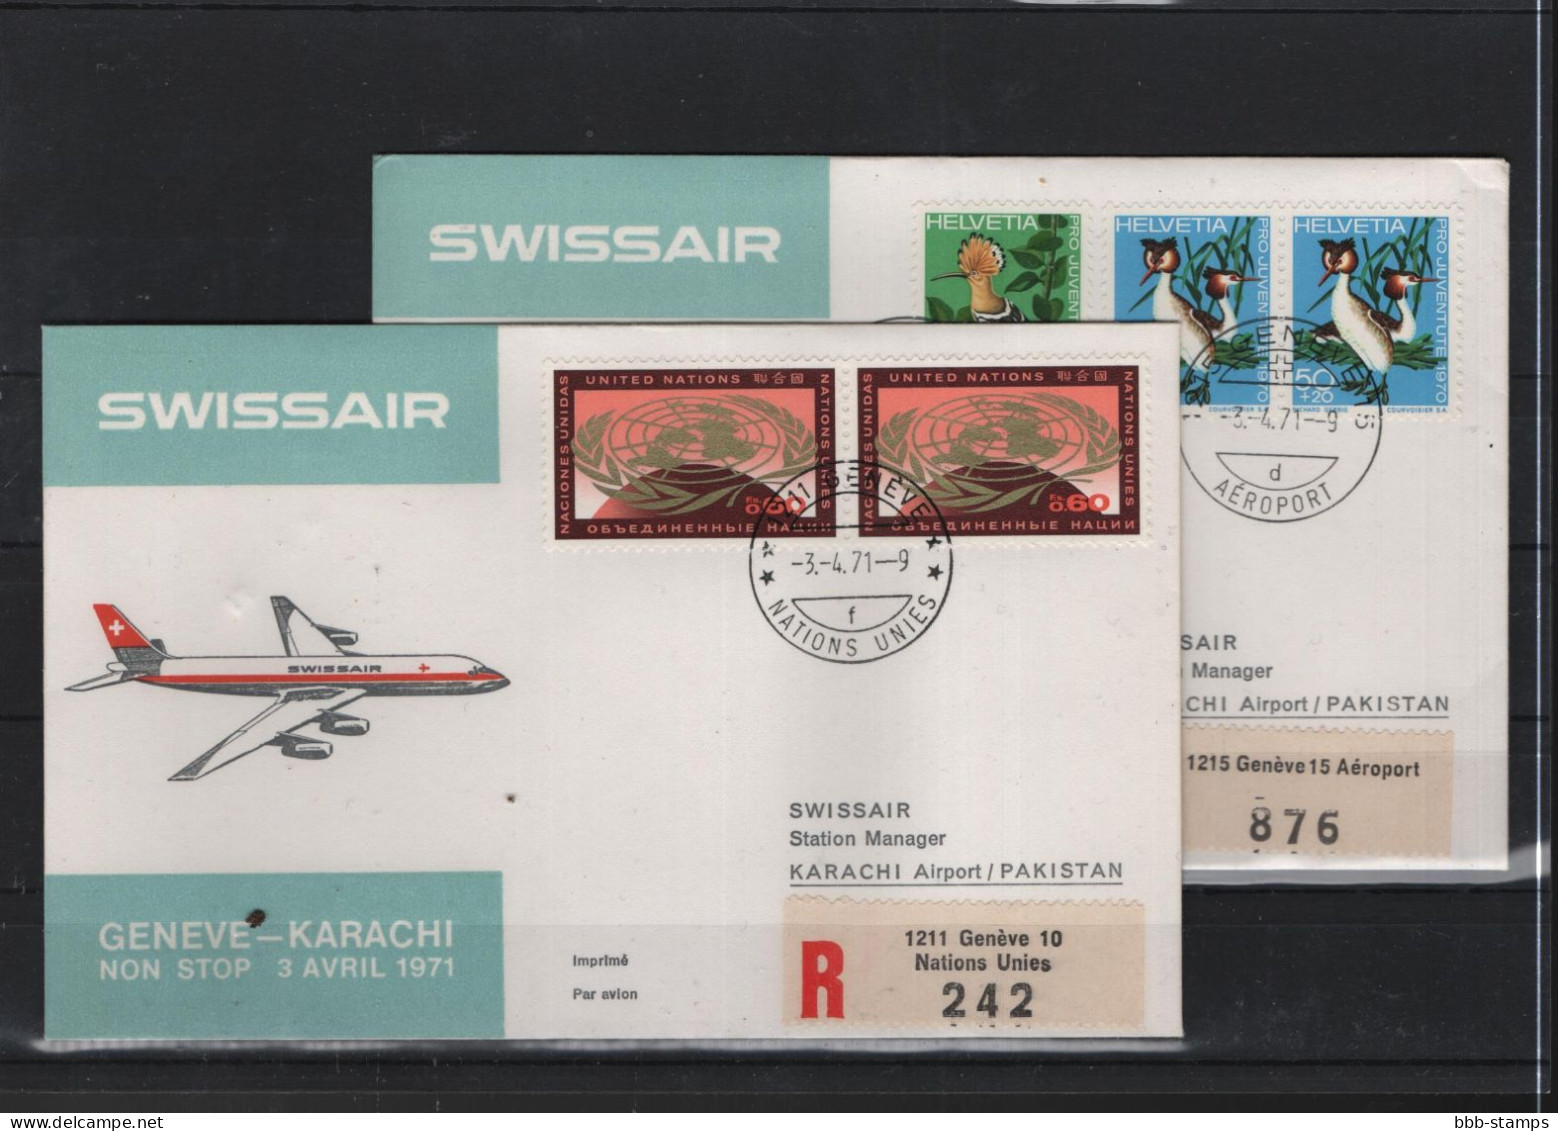 Schweiz Luftpost FFC Swissair 3.4.1971 Genf - Karachi - Primi Voli